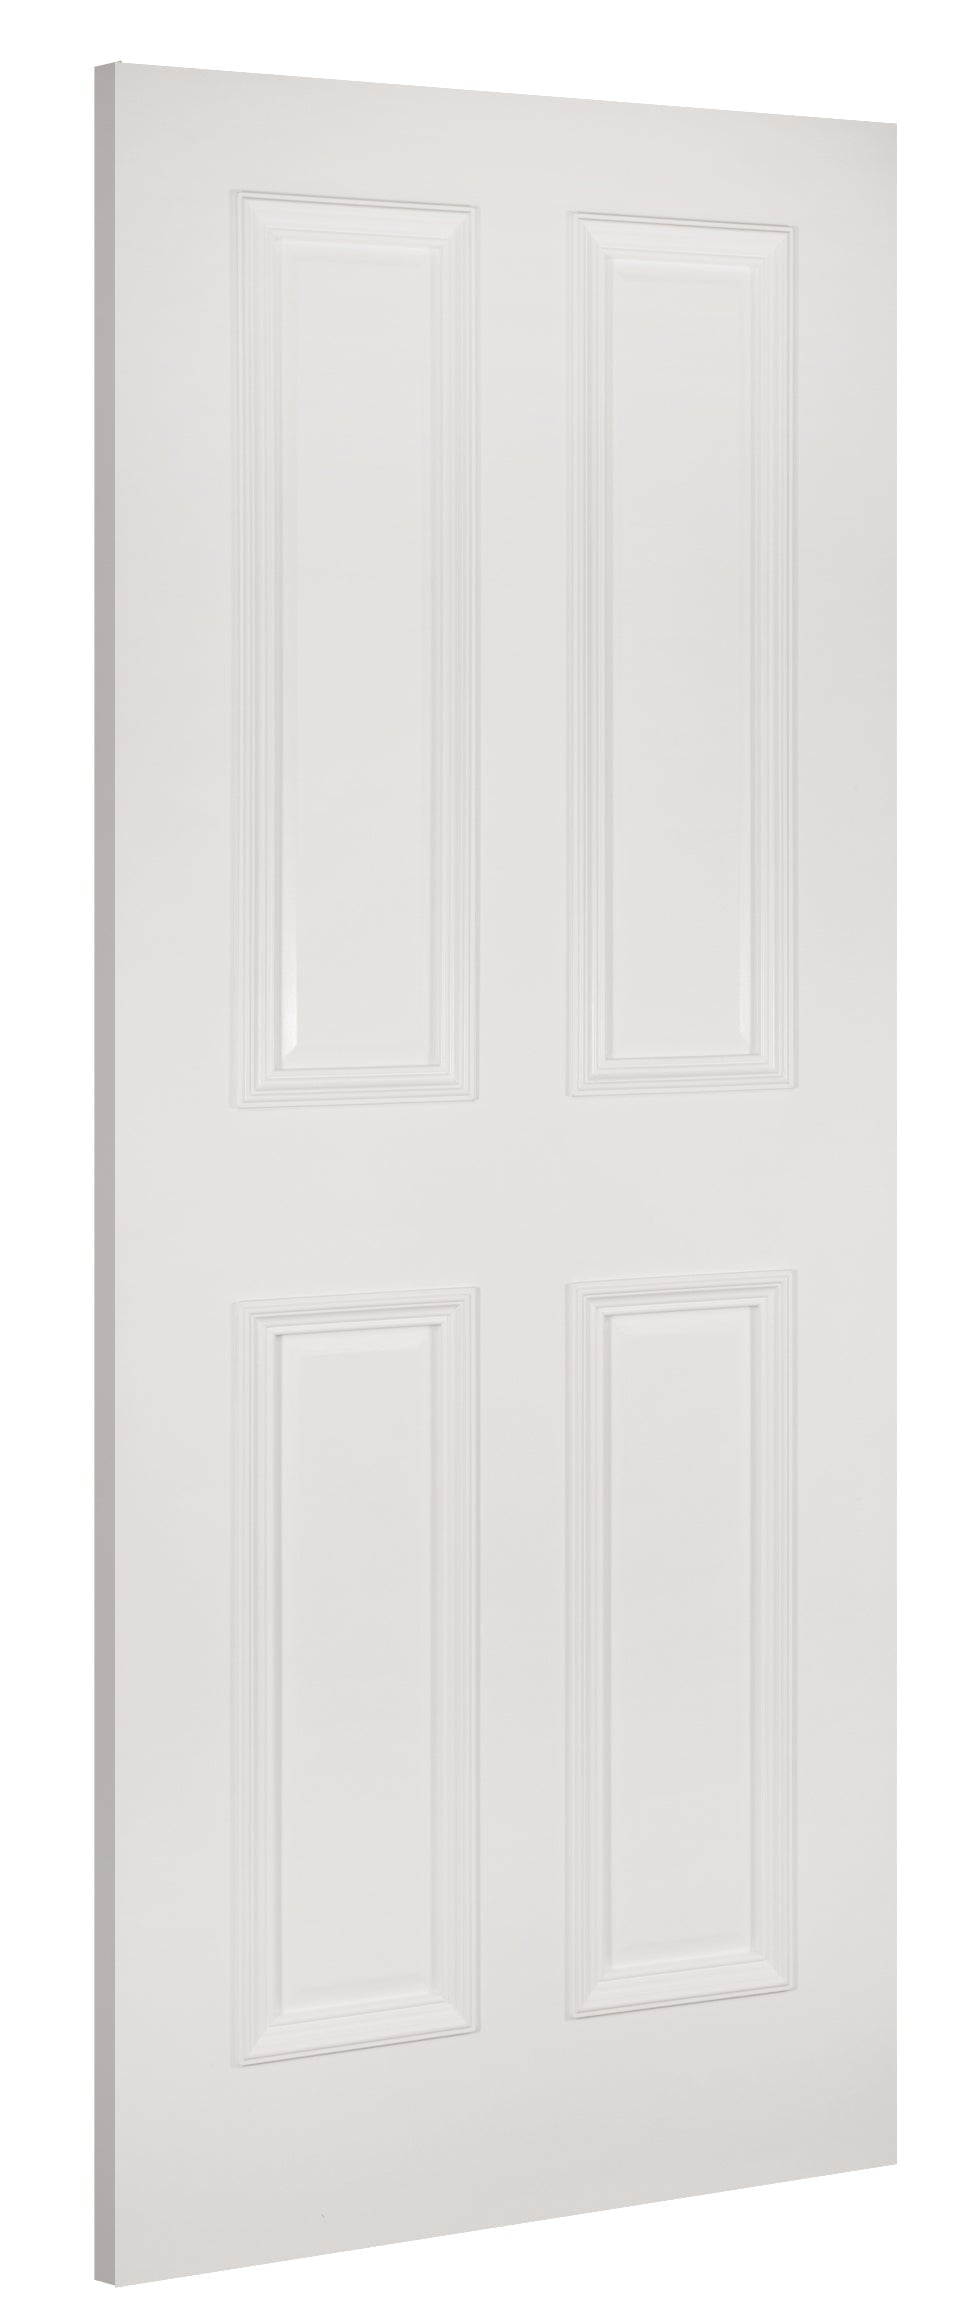 Deanta WR1 White Primed Door - Fire Door FD30